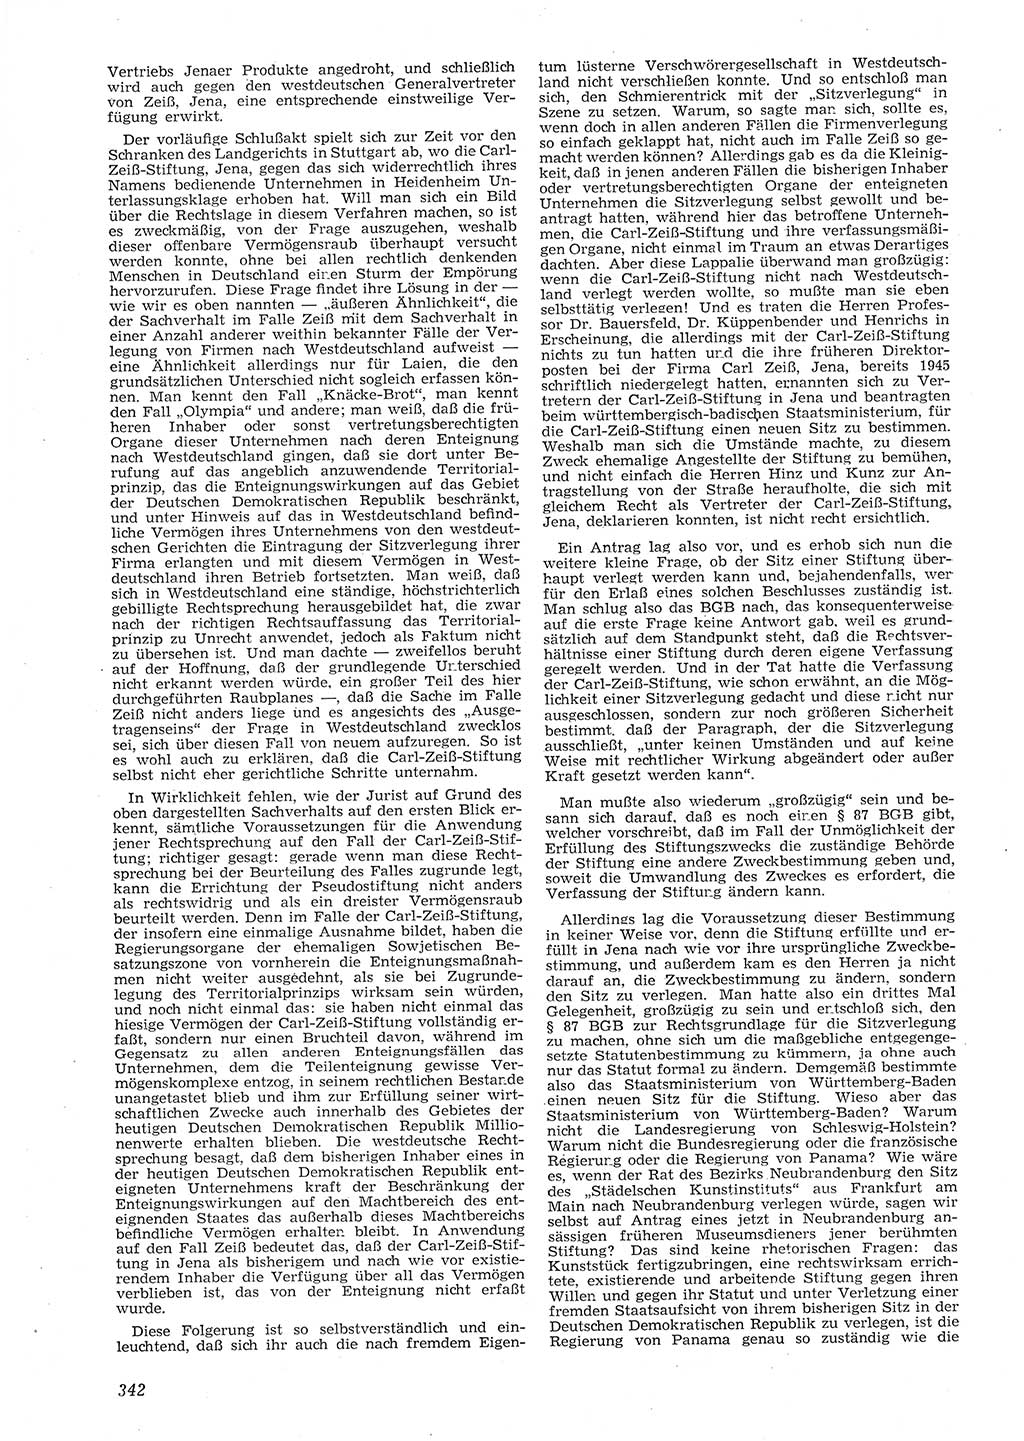 Neue Justiz (NJ), Zeitschrift für Recht und Rechtswissenschaft [Deutsche Demokratische Republik (DDR)], 8. Jahrgang 1954, Seite 342 (NJ DDR 1954, S. 342)